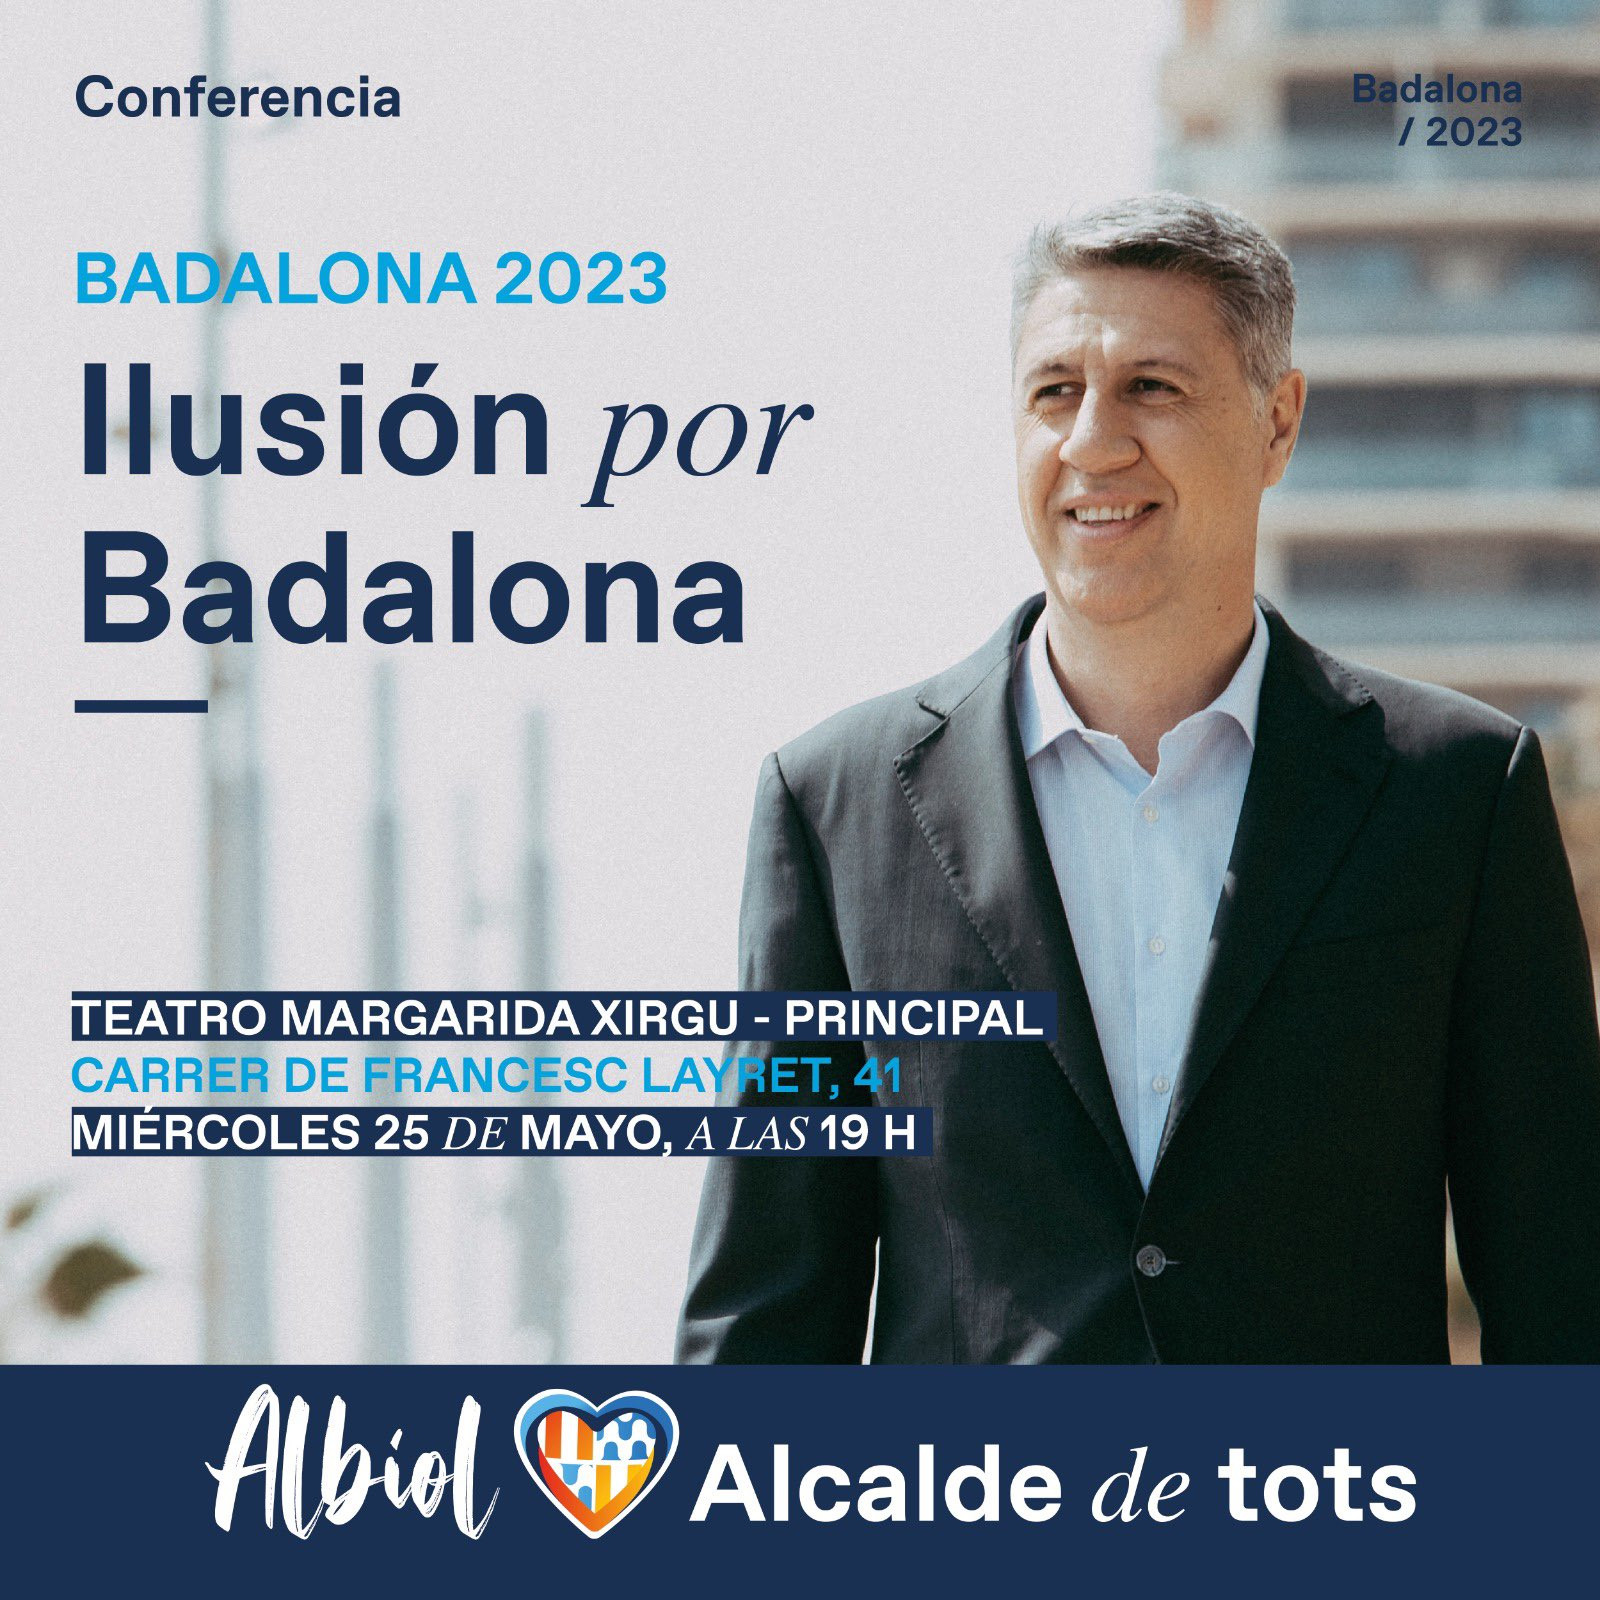 Cartel de la conferencia de Xavier García Albiol para presentar su campaña a las elecciones municipales de 2023 / XAVIER GARCÍA ALBIOL